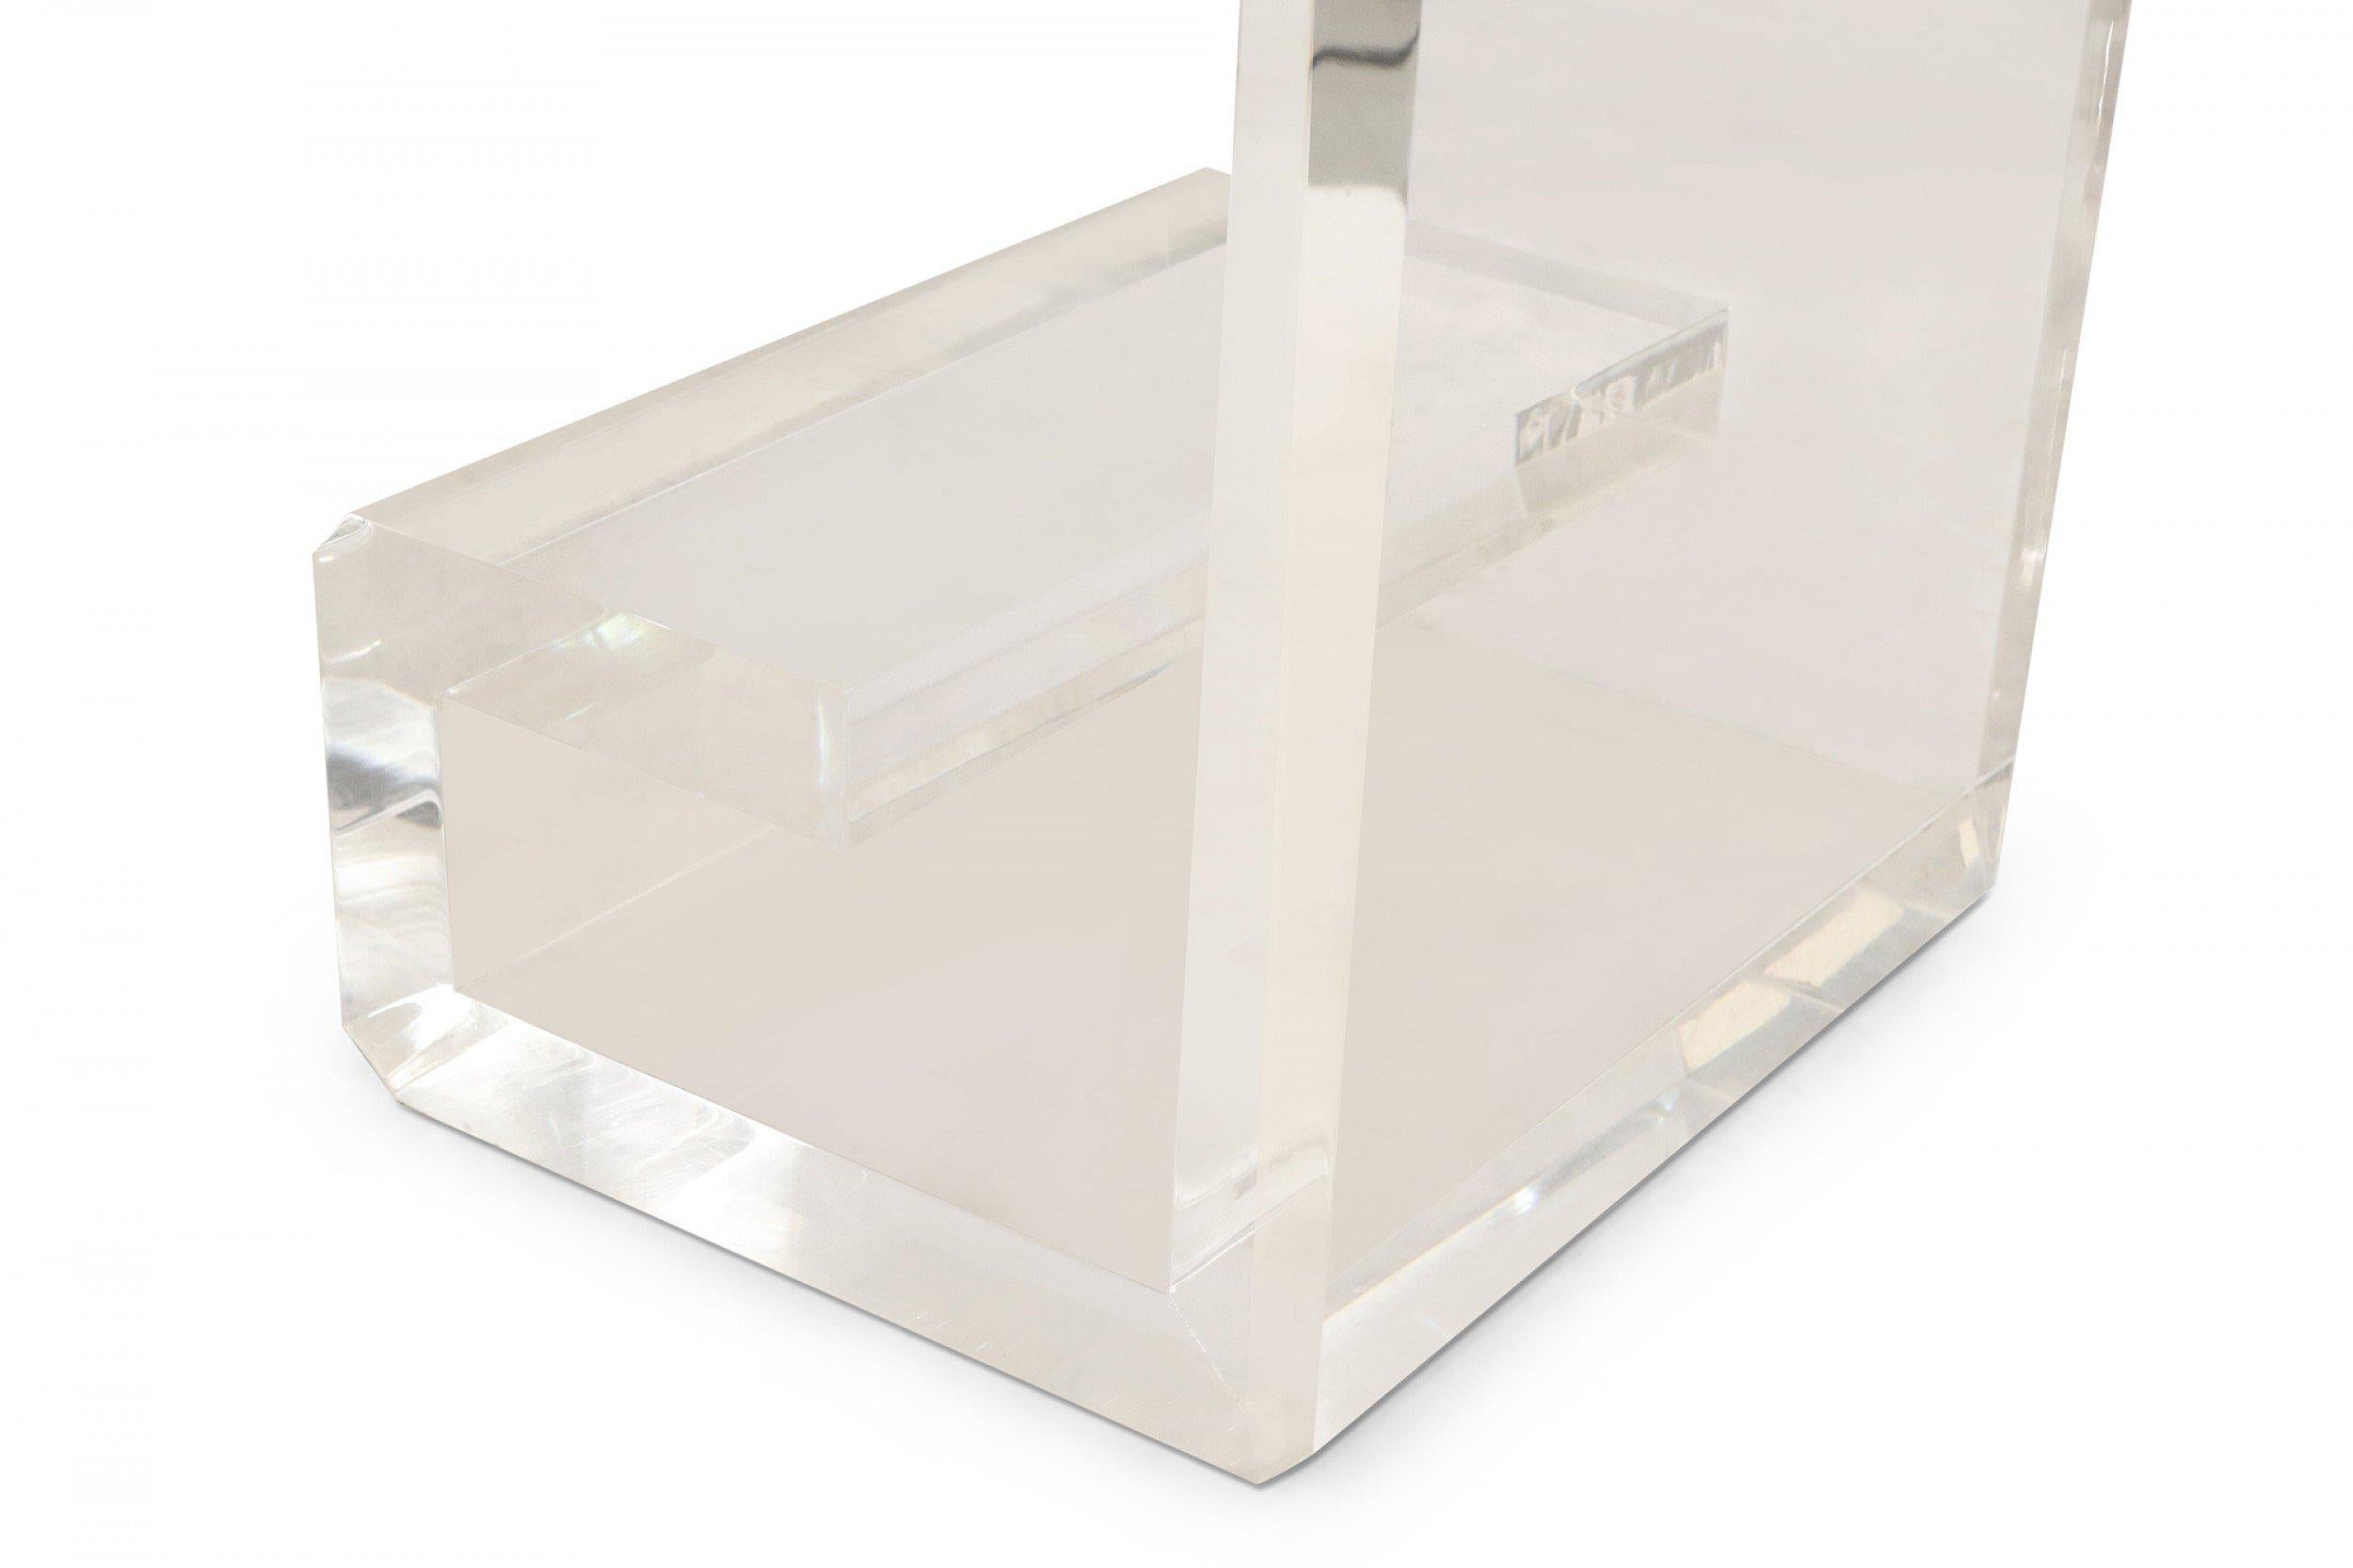 Bureau contemporain en lucite avec 3 carrés de miroir antiquisé encastrés sur la surface supérieure, un compartiment/étagère en verre peu profond et des pieds géométriques en forme de volutes. (conçu par Geoffrey Bradfield).
 